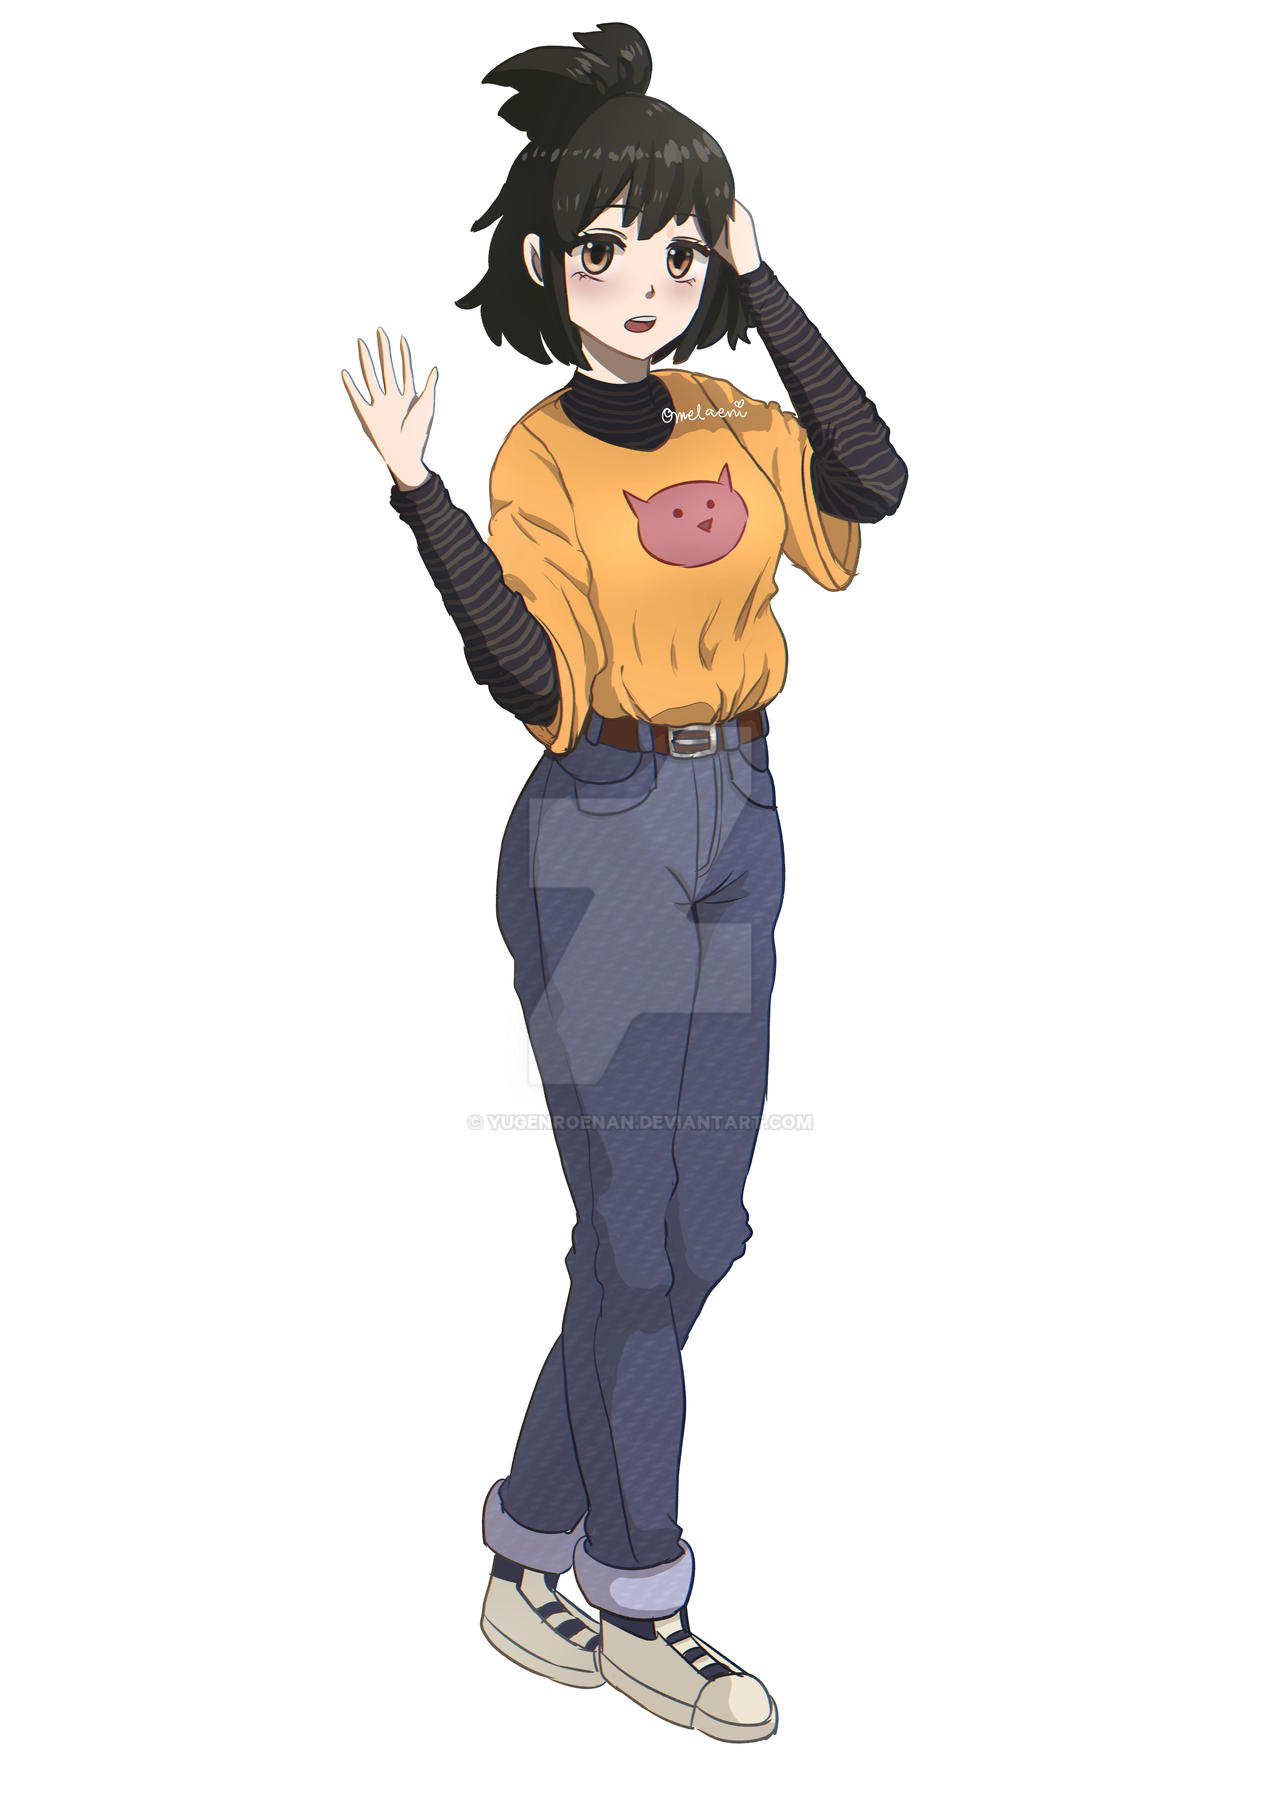 anime girl standing by yugenroenan on DeviantArt